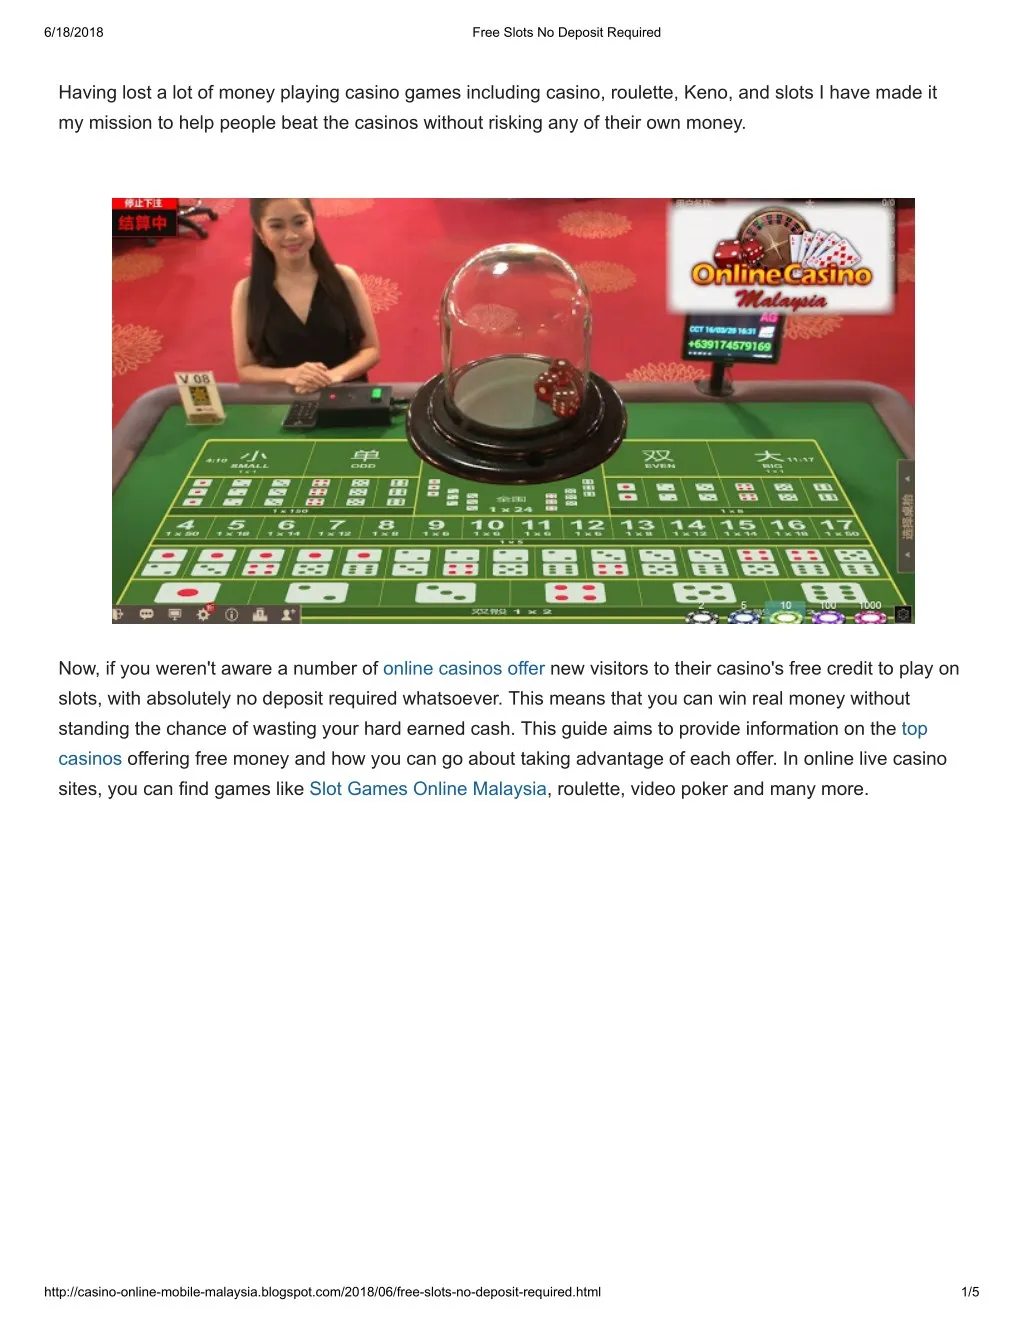 Free Sunflower Slot Machines Konami | The Types Of Casino Slot Machine